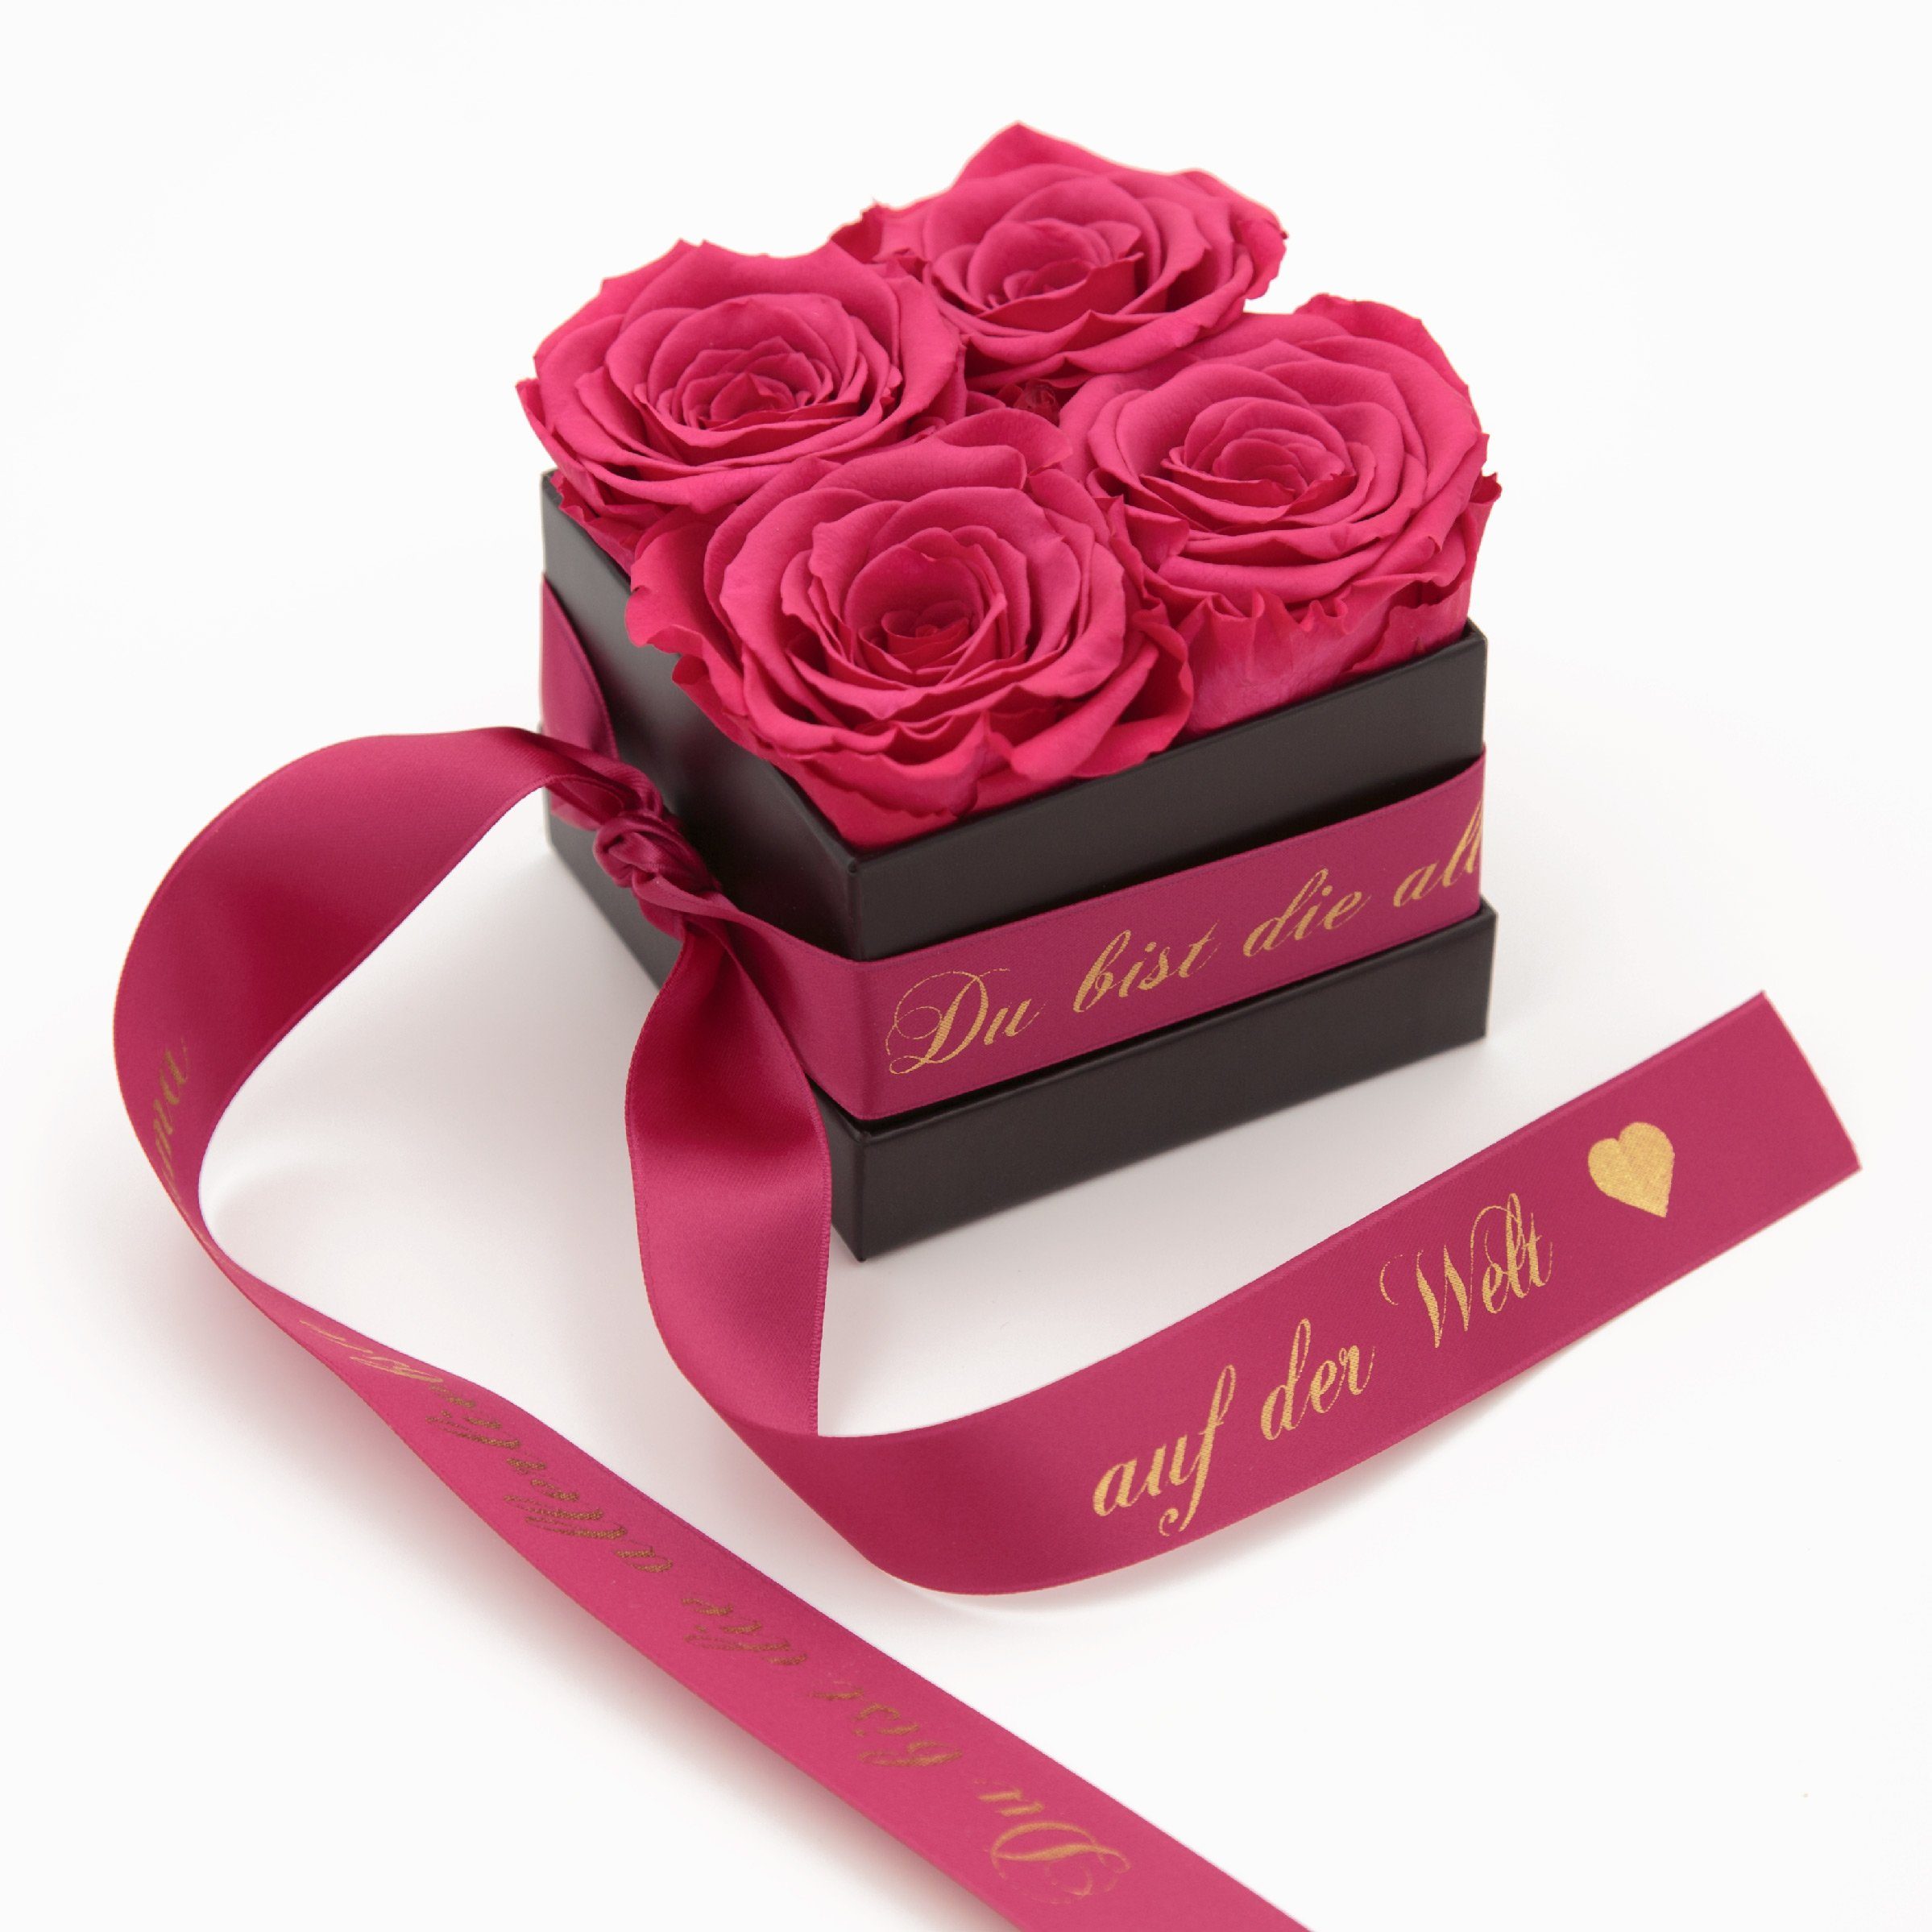 Kunstblume Allerliebste Mama auf der Welt Geschenk Rosenbox 4 konservierte Rosen Rose, ROSEMARIE SCHULZ Heidelberg, Höhe 8,5 cm, Echte Rosen haltbar 3 Jahre Pink